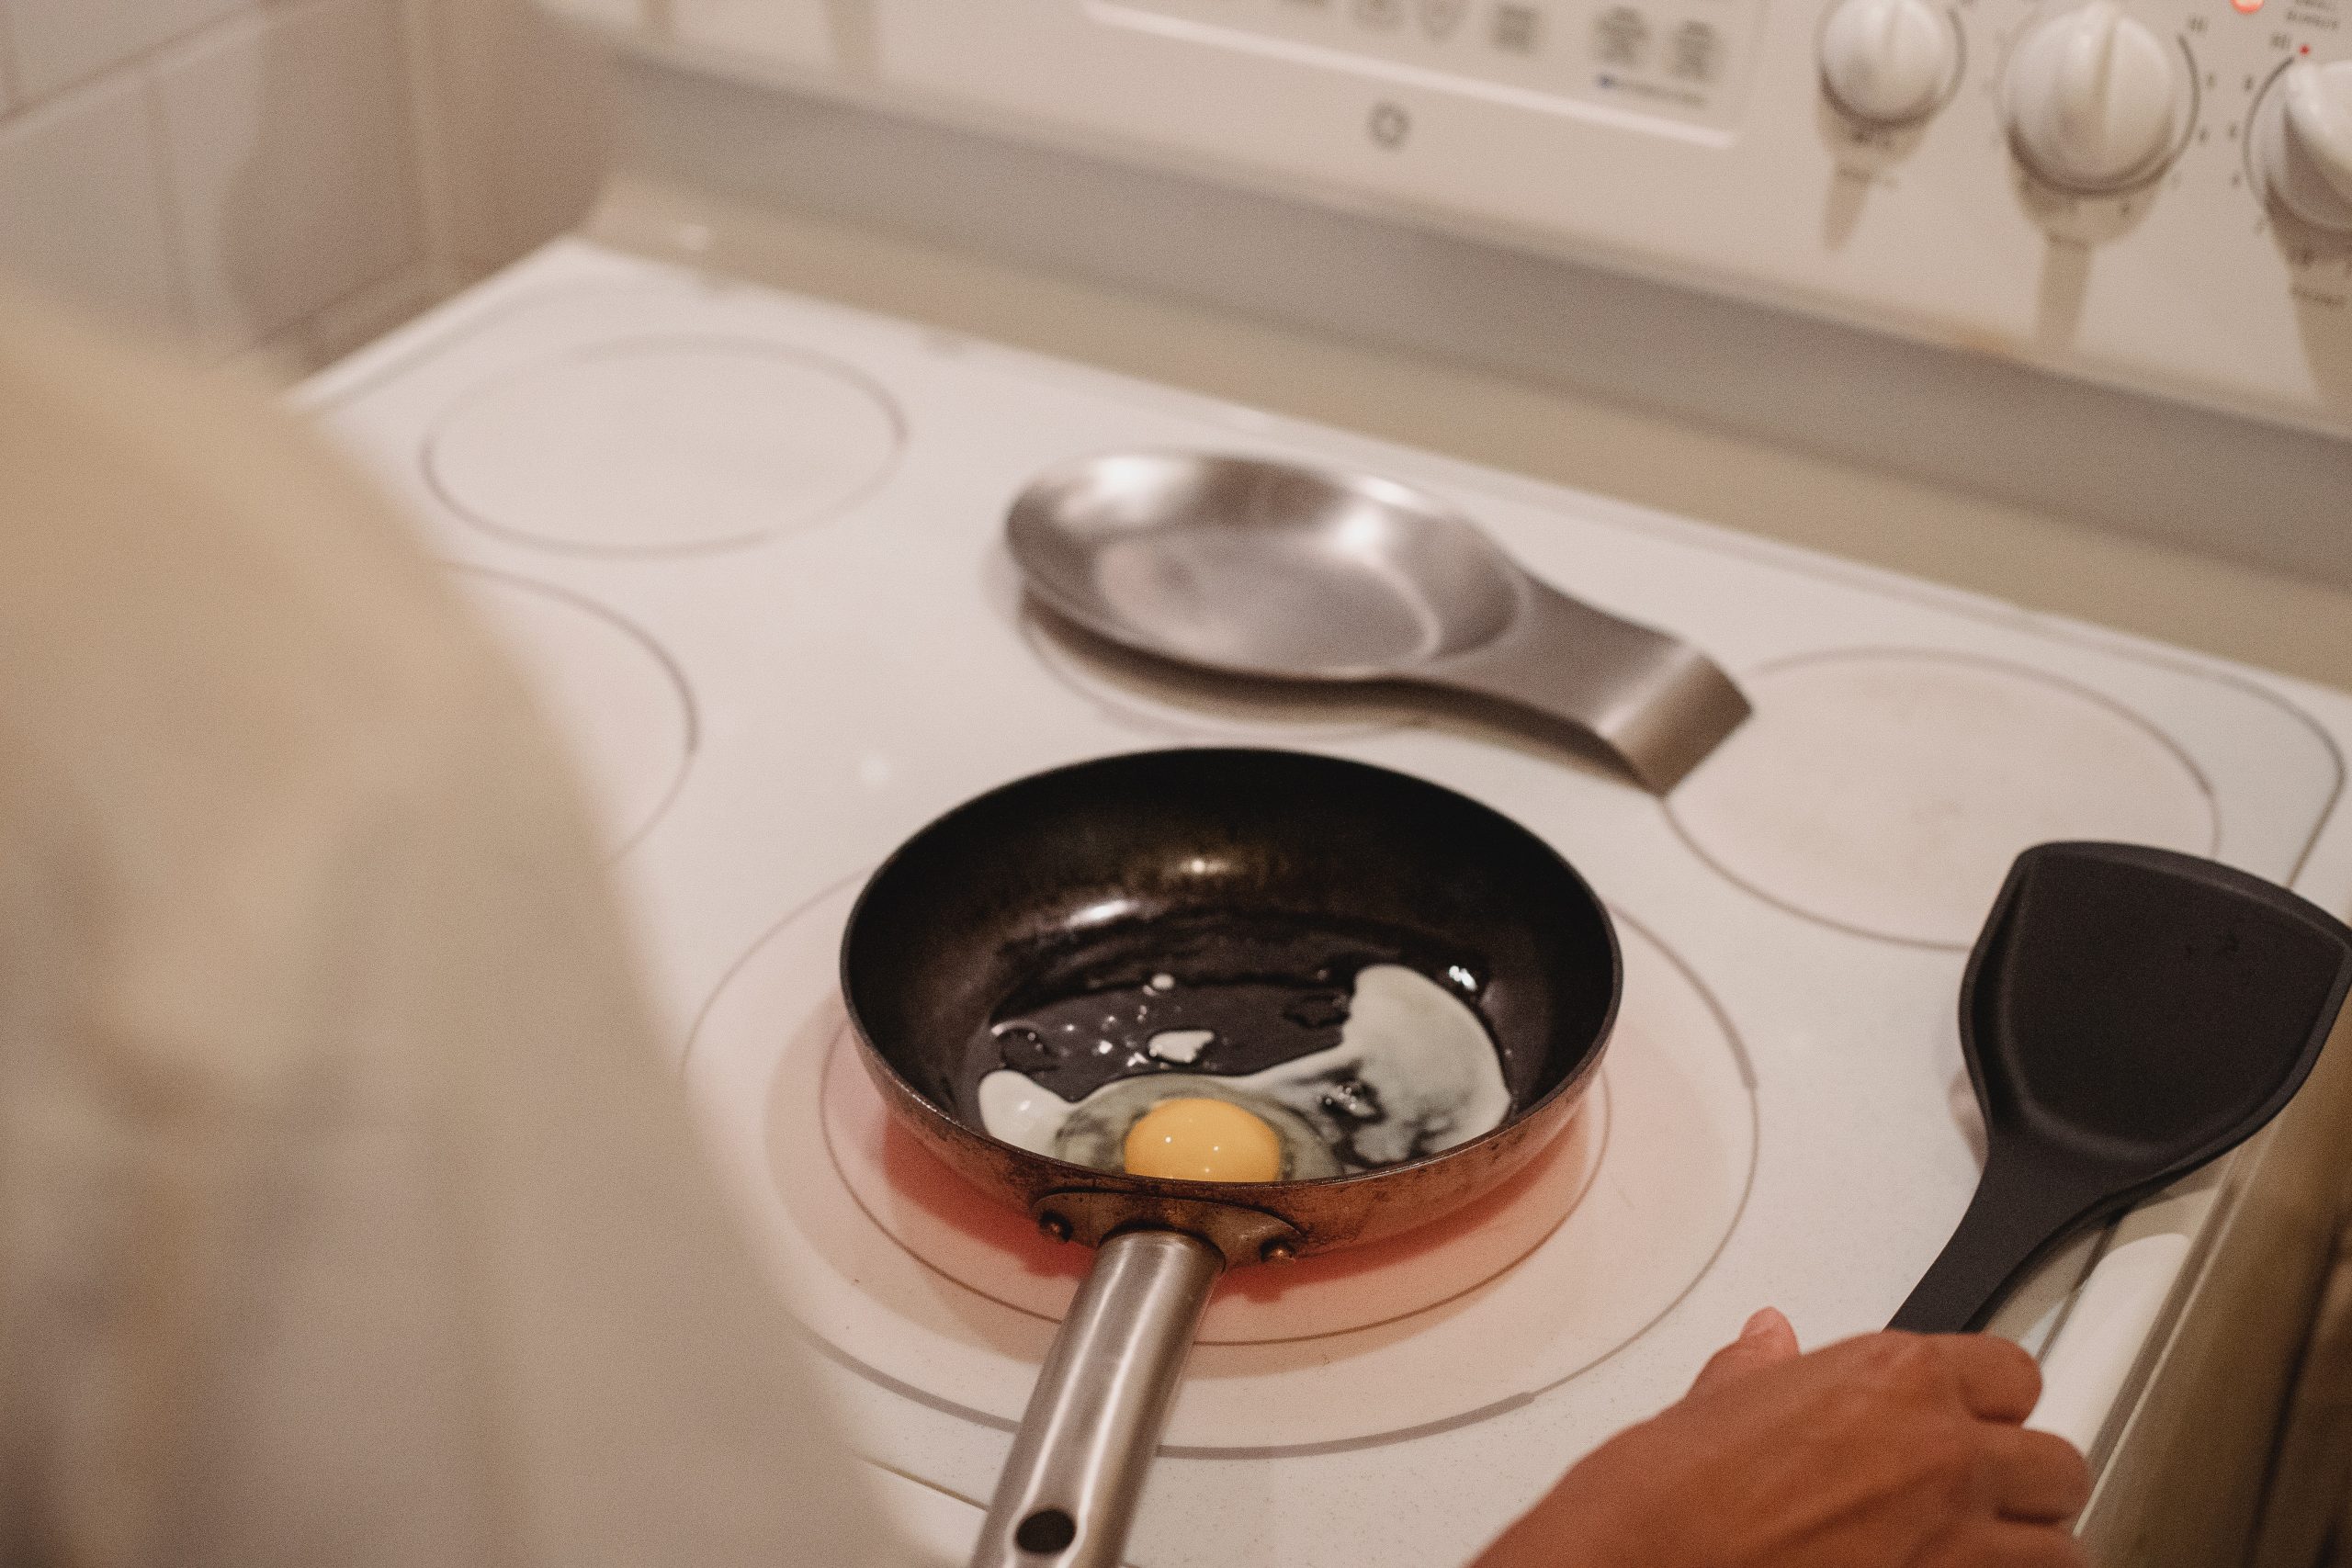 Шеф-повар раскрыл секрет приготовления самых вкусных яиц: дело в сковороде